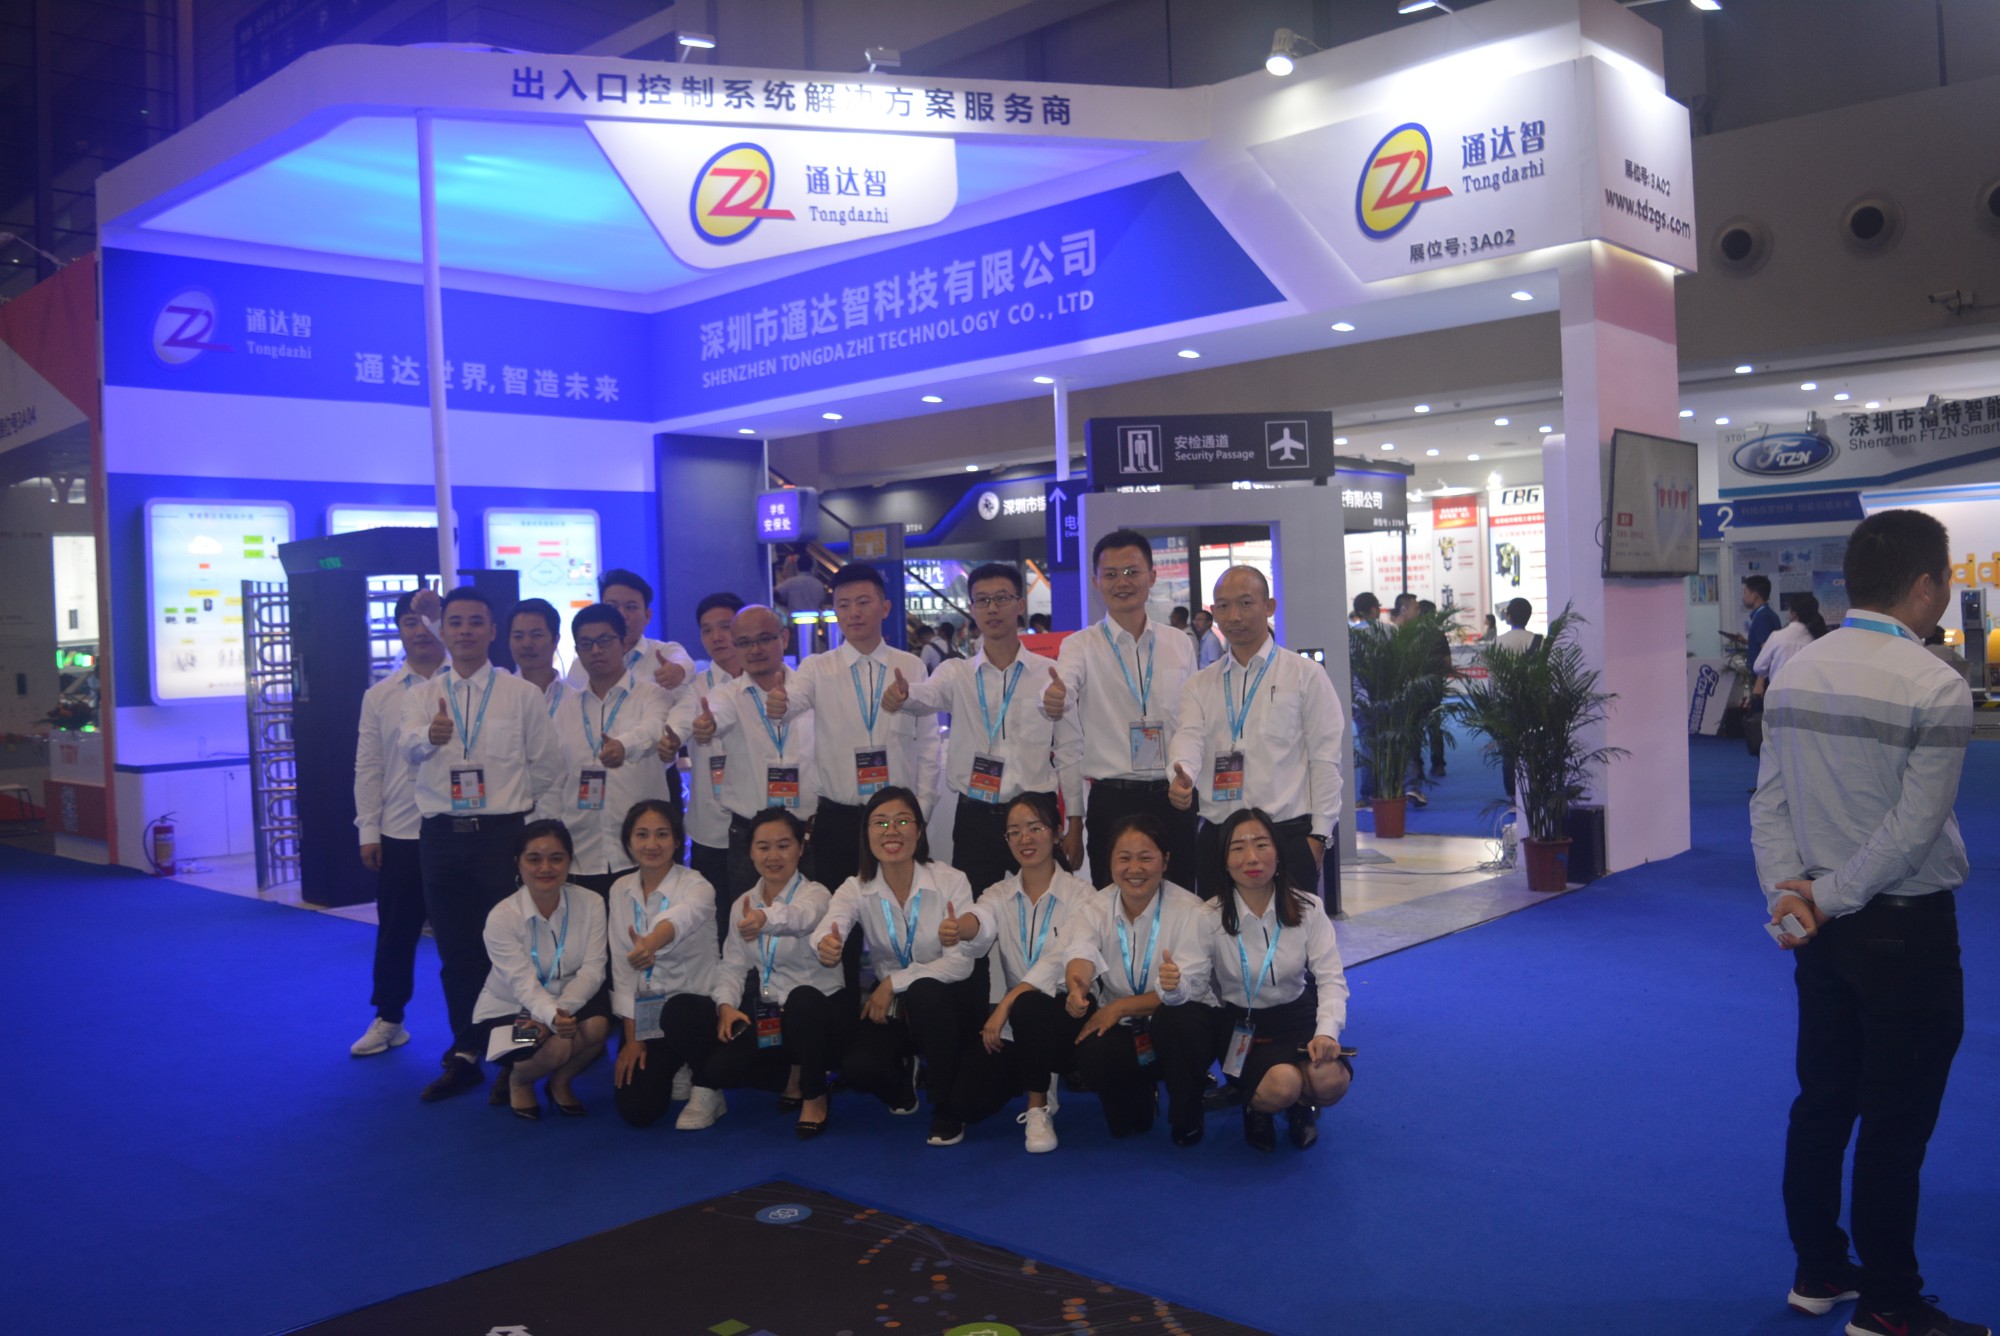 Shenzhen Tongdazhi Technology Co., Ltd